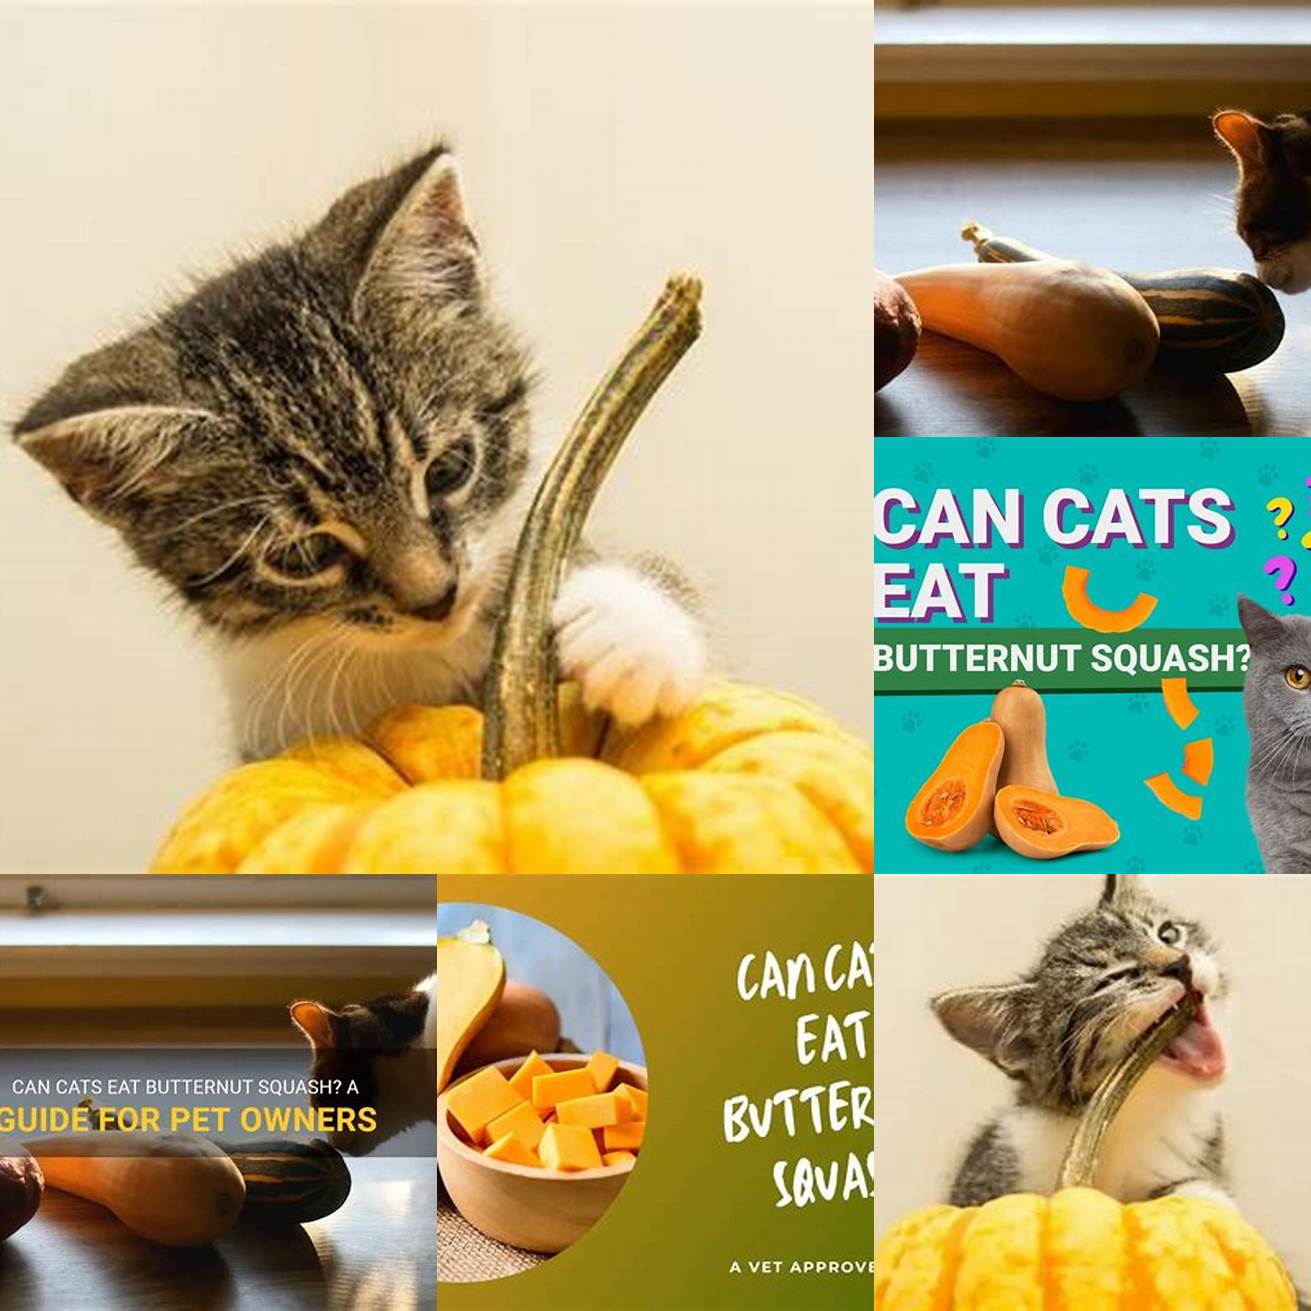 6 Can kittens eat butternut squash